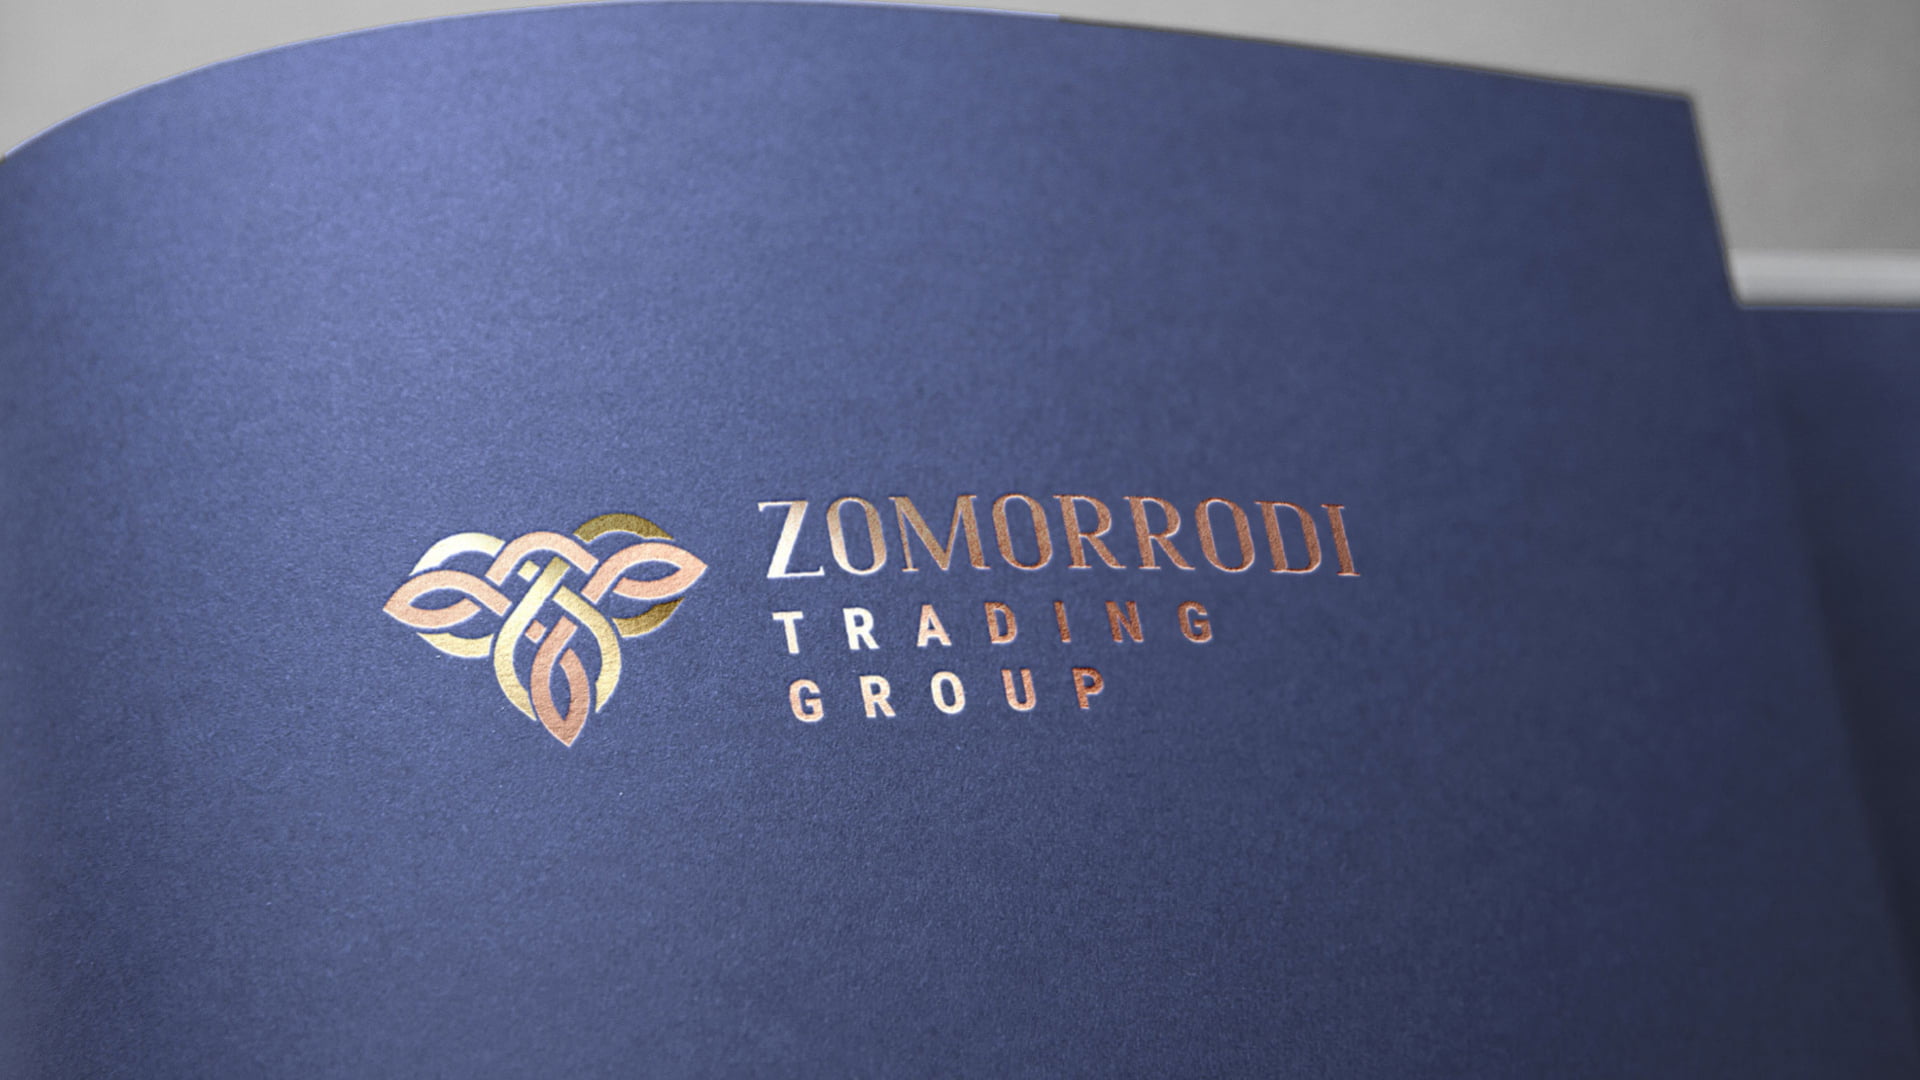 Zigma8-Works-Web-Zomorrodi-work-7-5